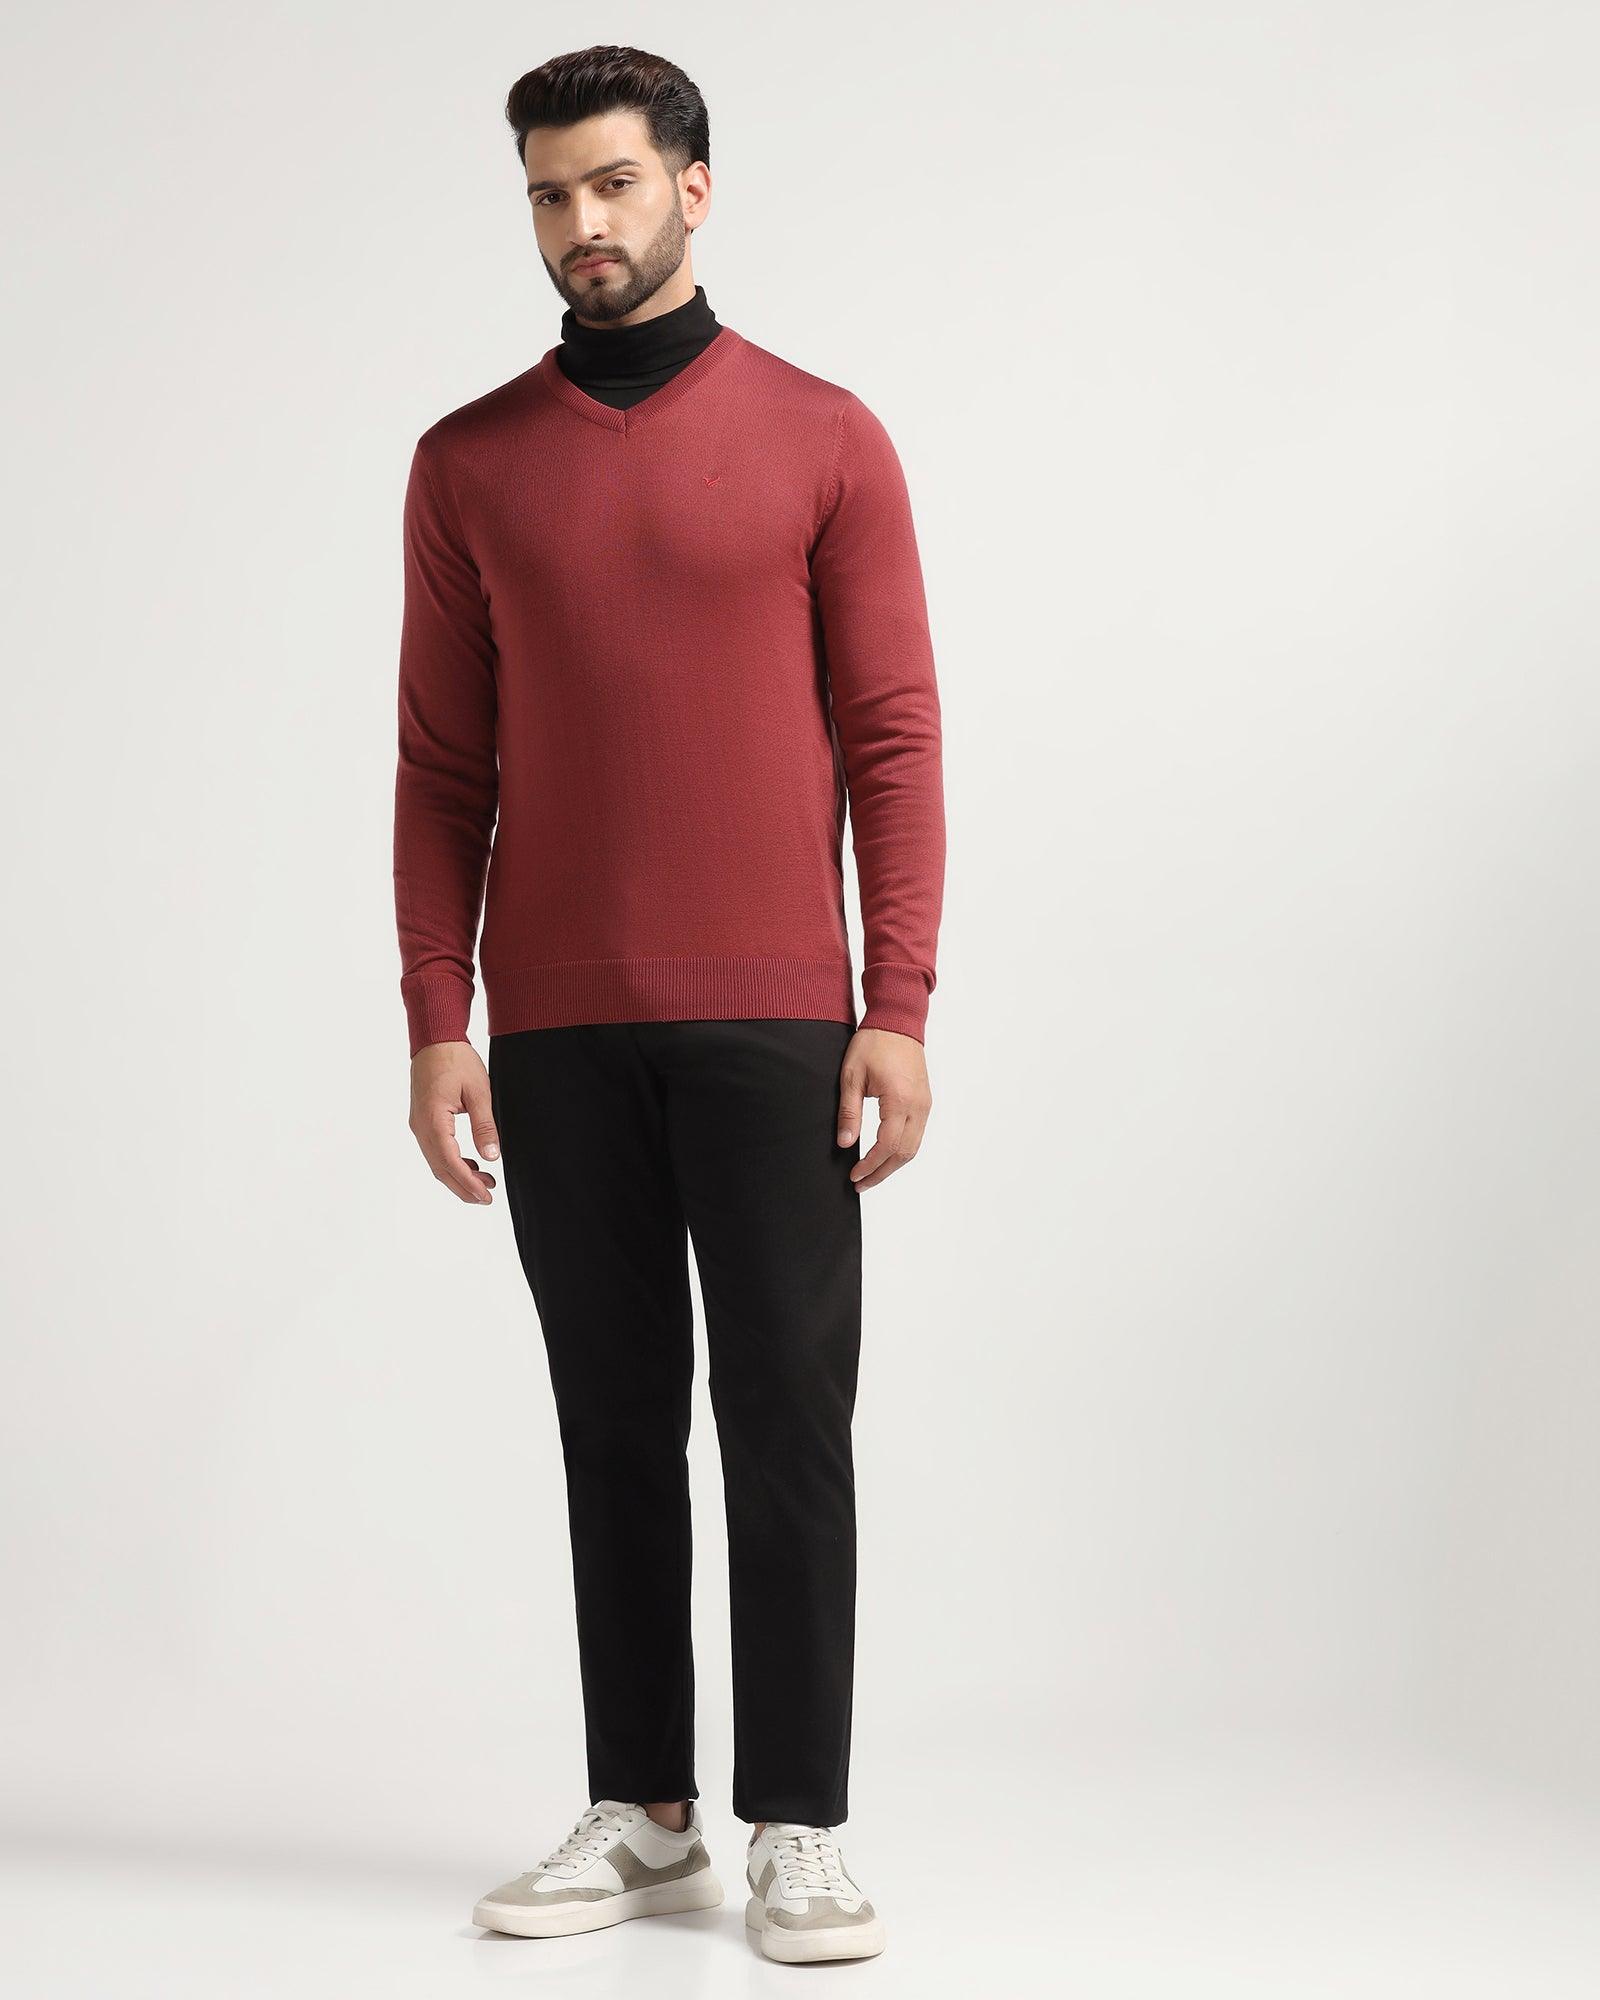 V-Neck Rose Quartz Solid Sweater - Rosin